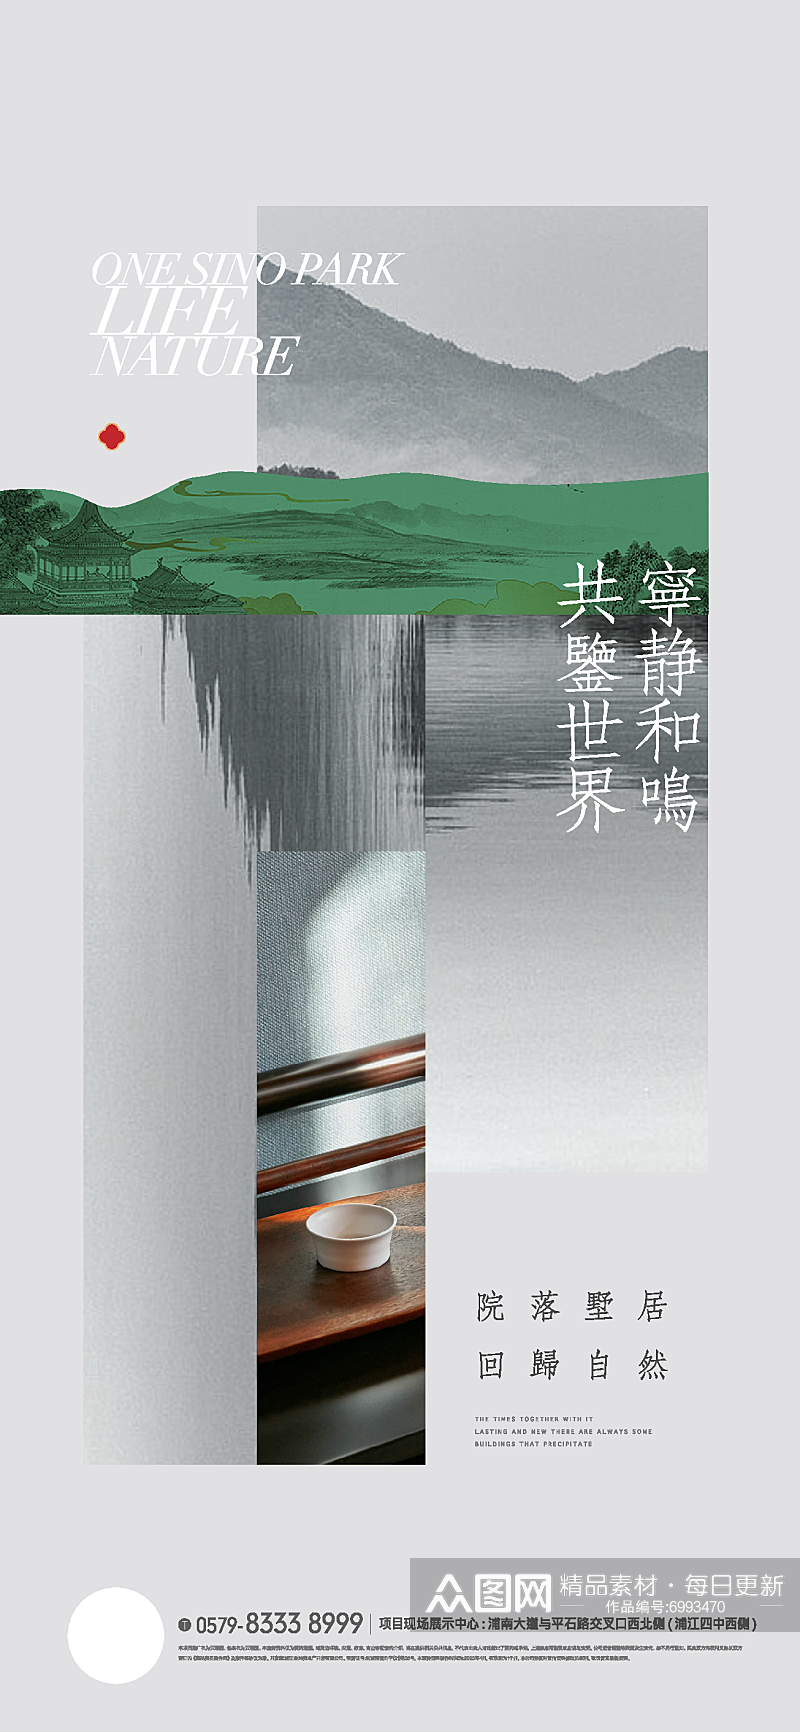 唯美中国风房地产海报设计素材